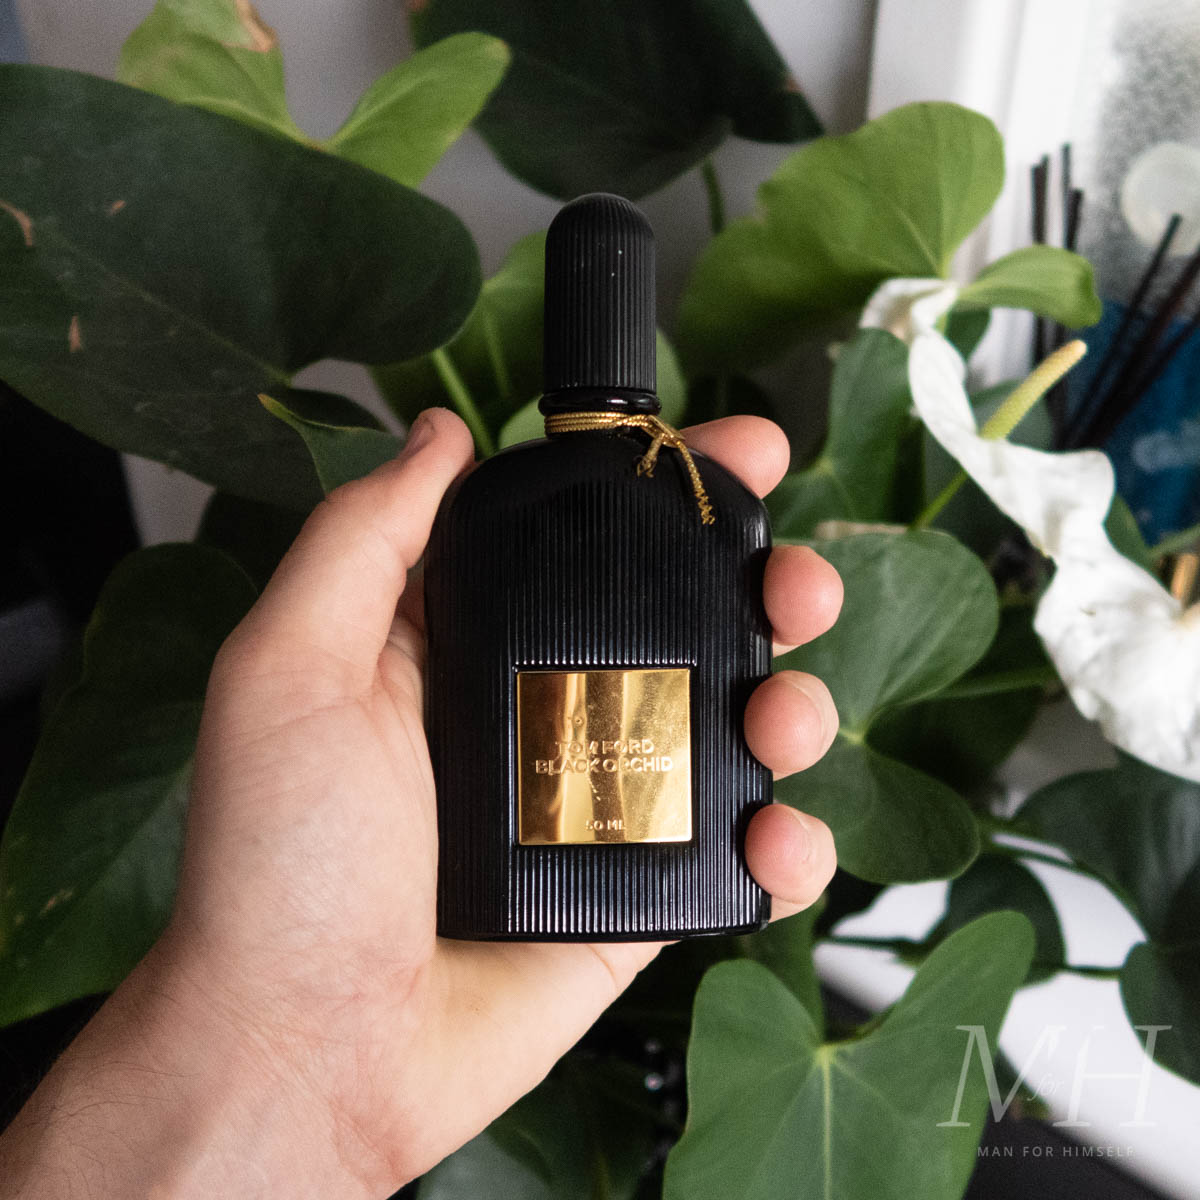 Tom Ford Black Orchid Eau De Parfum, Perfume